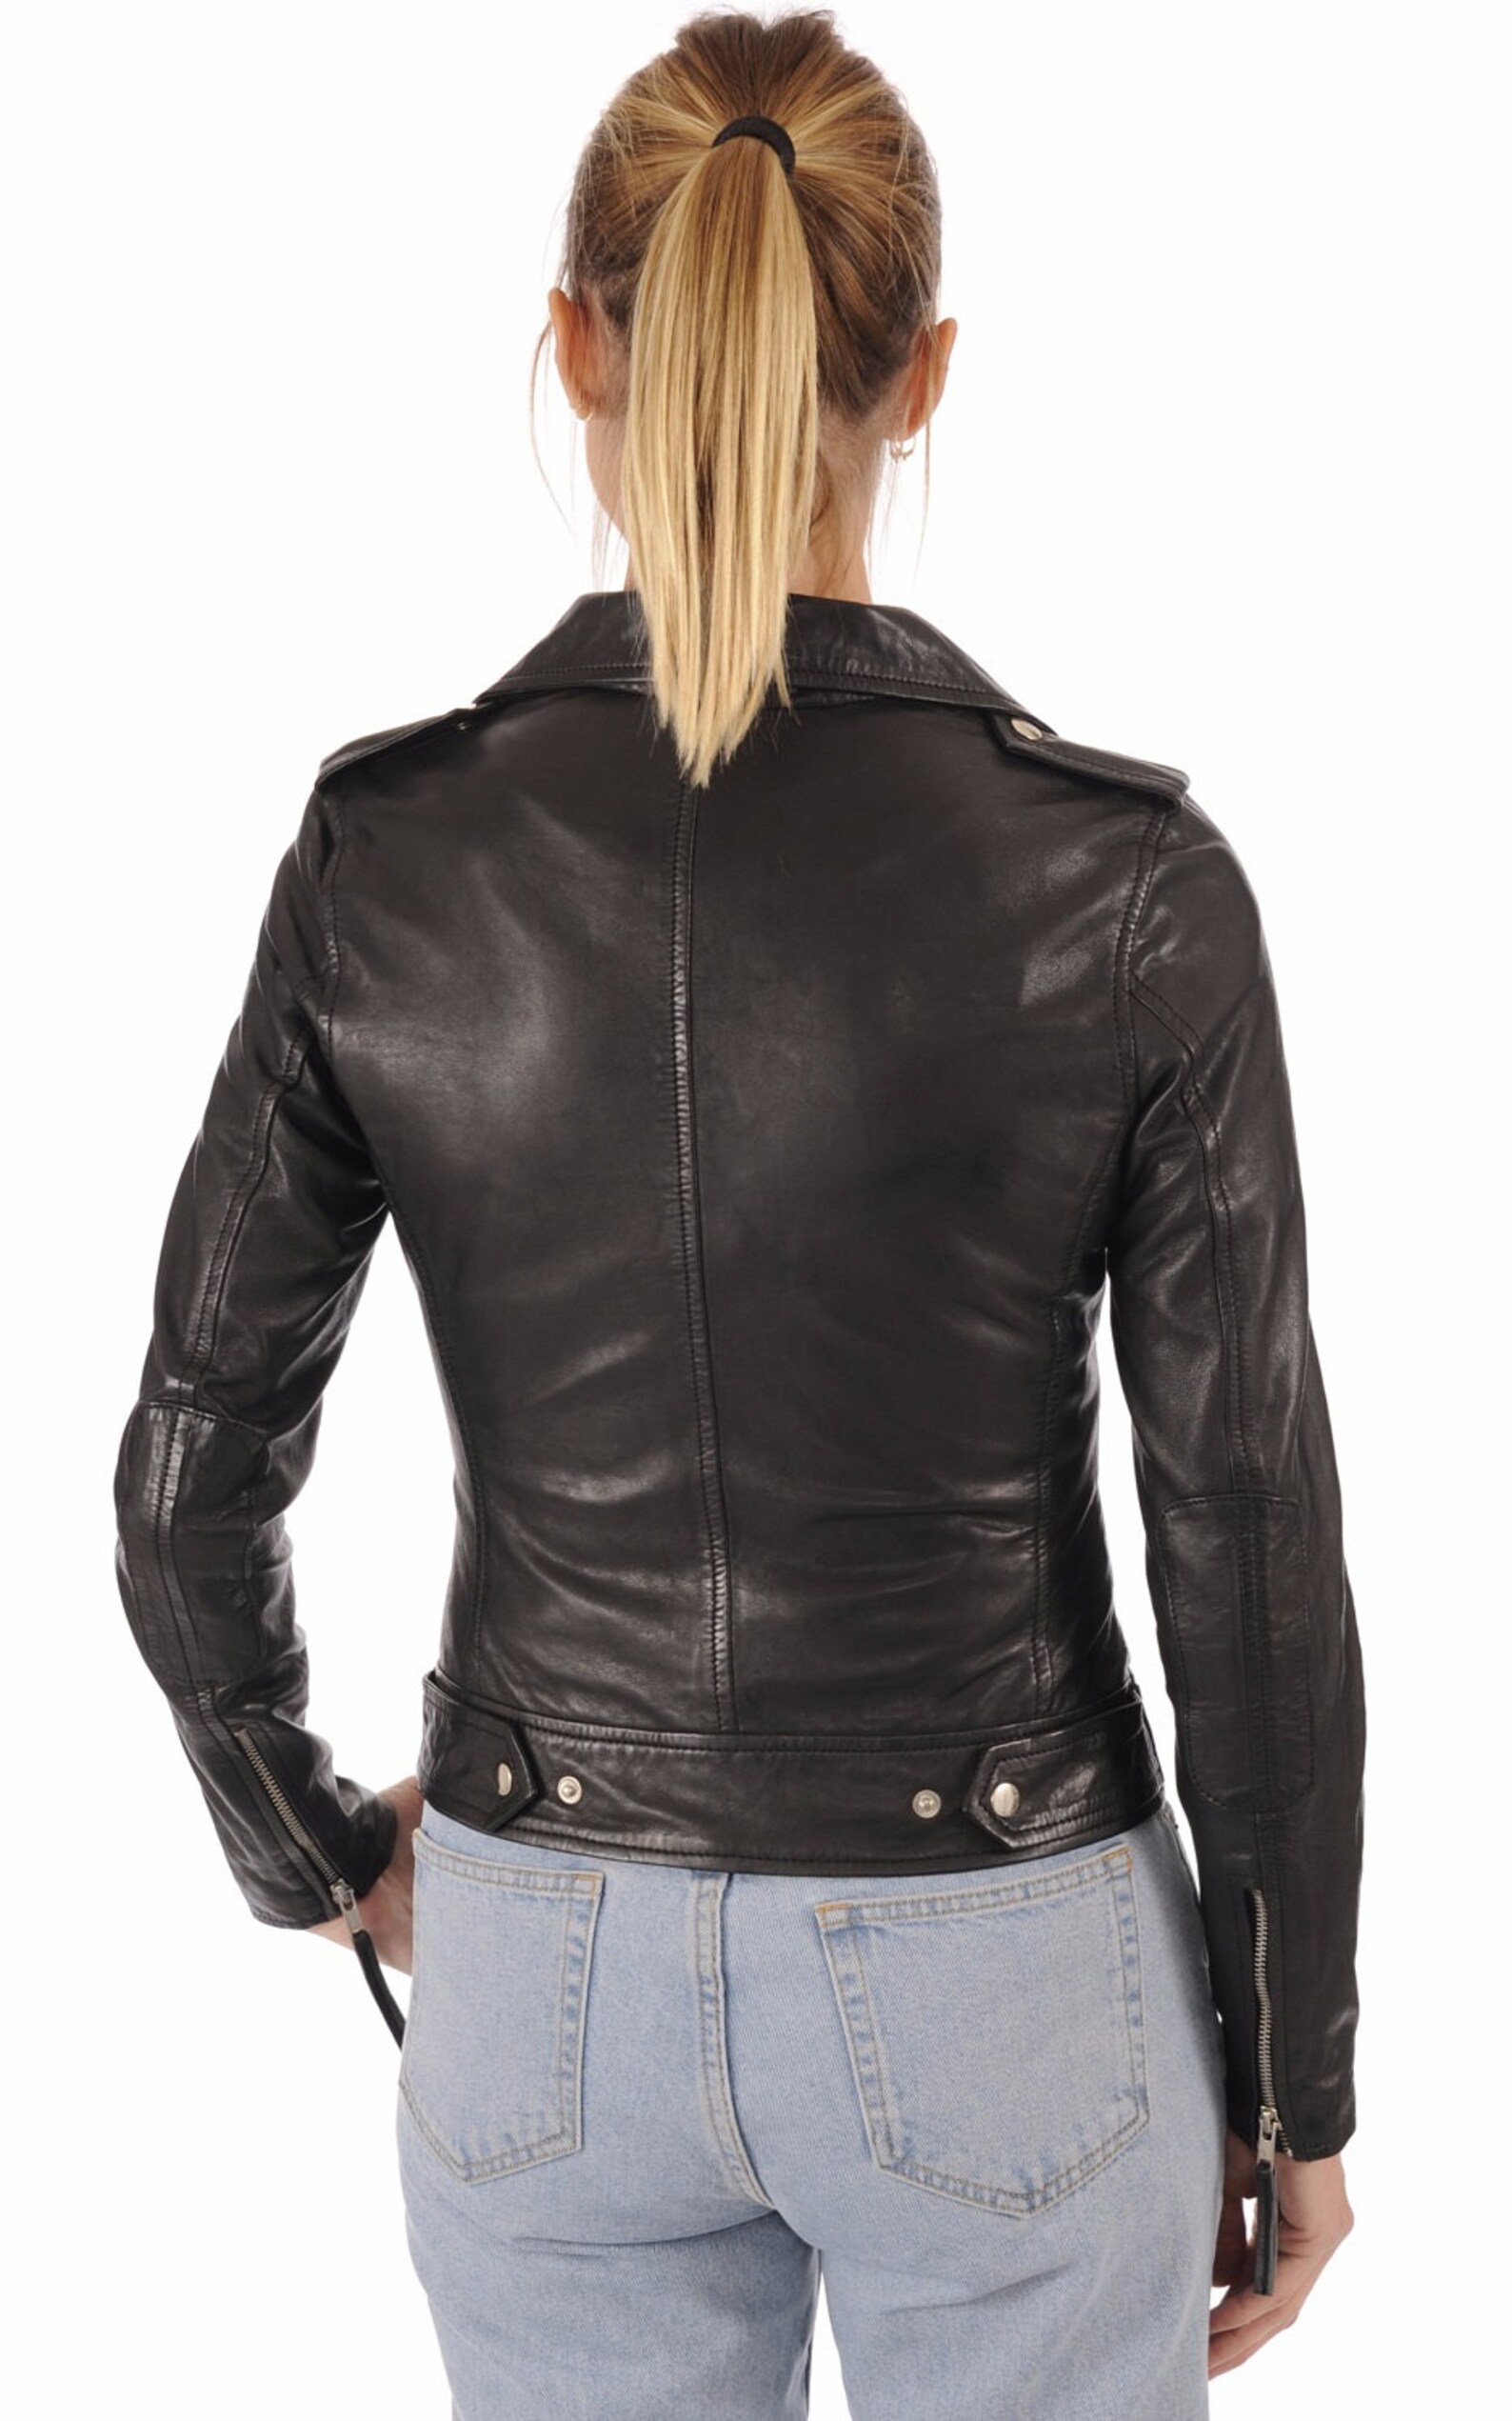 SkinOutfit Women Leather Jacket Bomber Biker Genuine Lambskin | Etsy